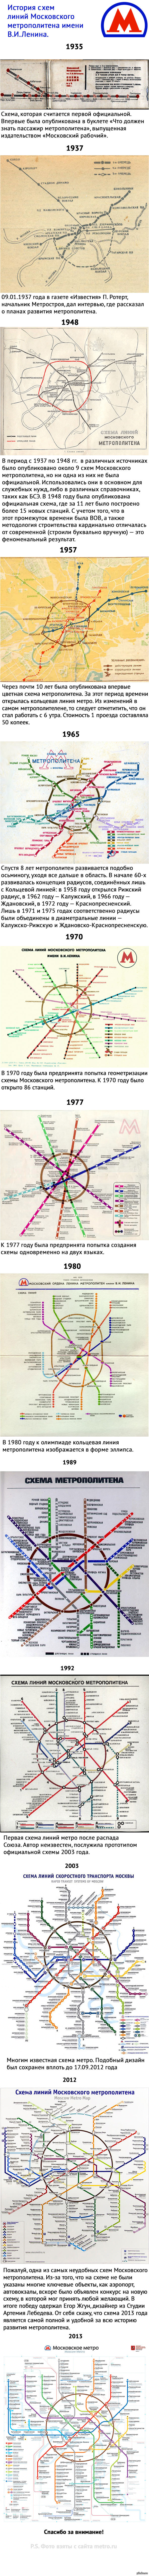     .   . 1935-2013 .